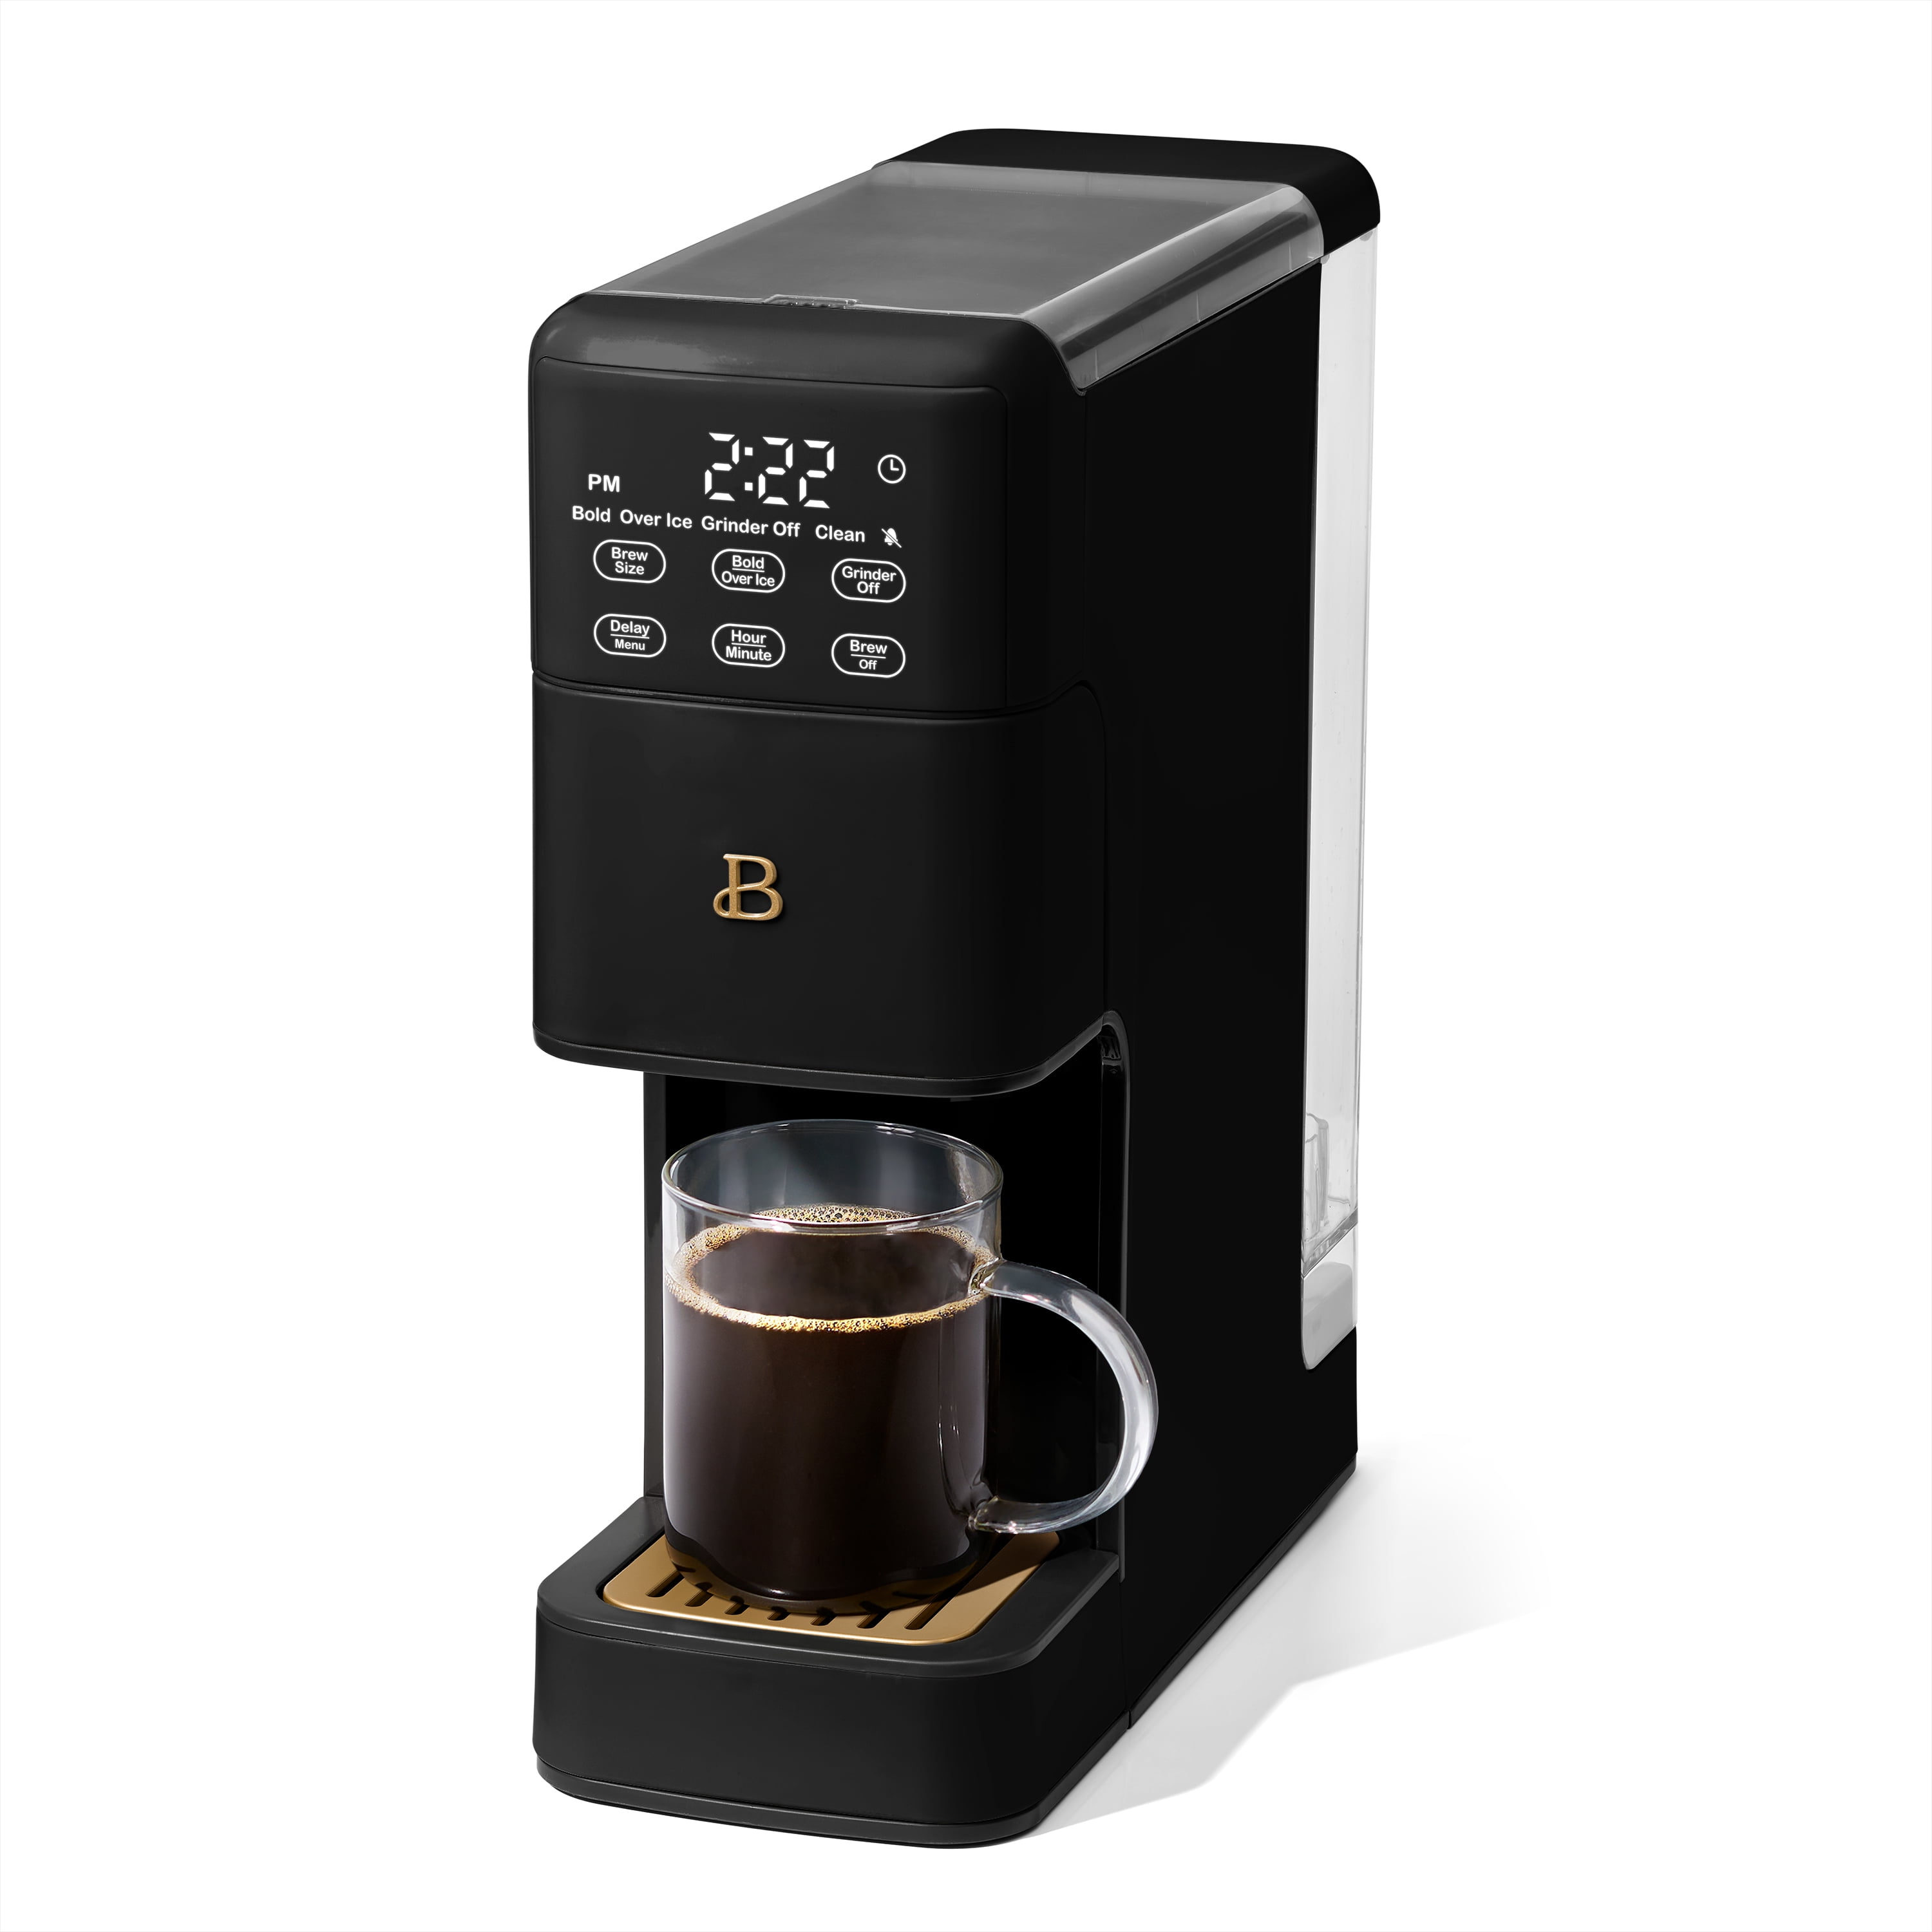 B Coffee Maker (Drew Barrymore) - Coffee Makers - La Center